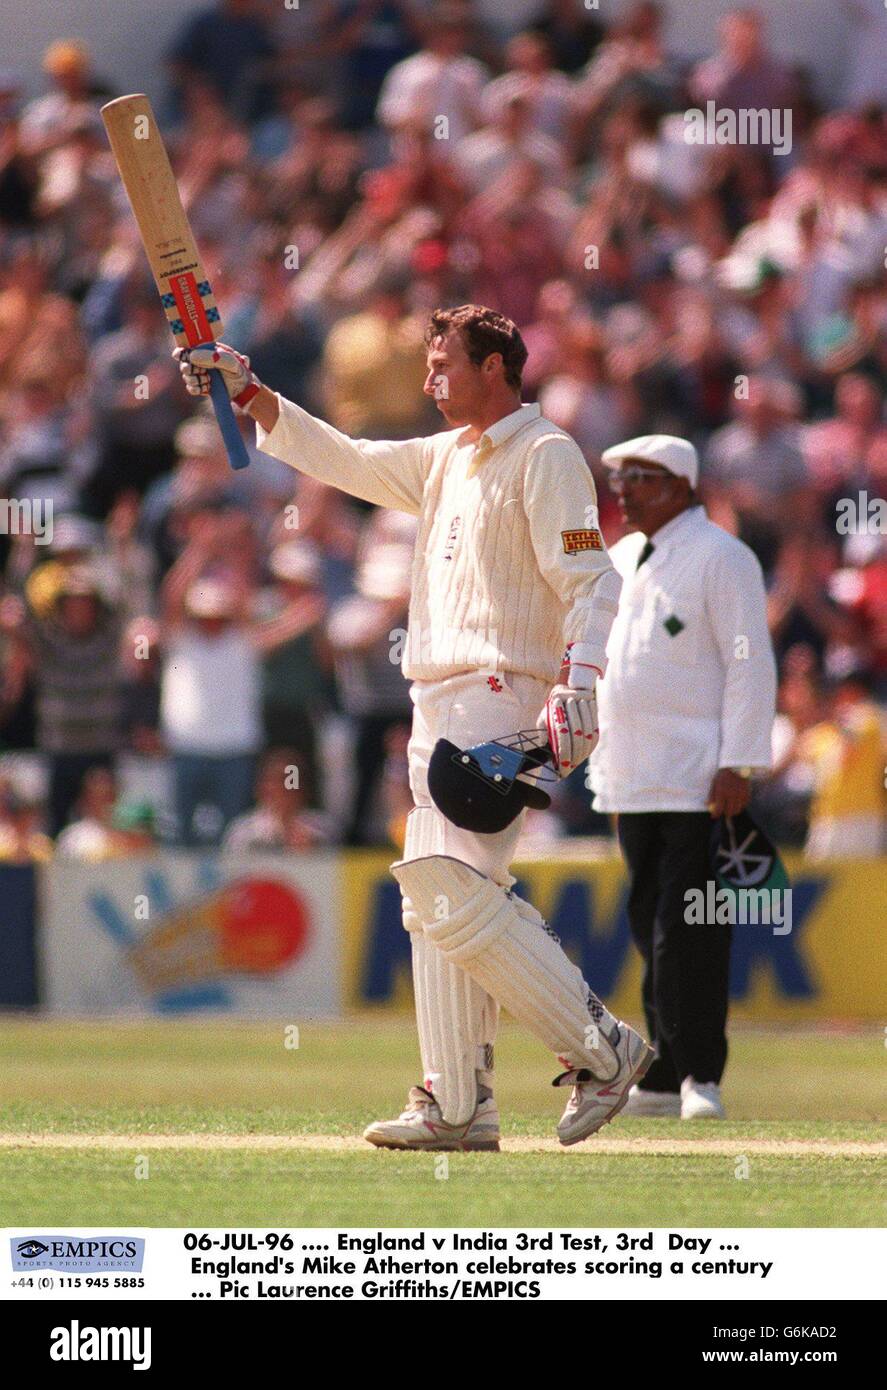 06-JUL-96, Angleterre / Inde 3e Test, 3e jour, le Mike Atherton d'Angleterre célèbre un siècle de notation Banque D'Images